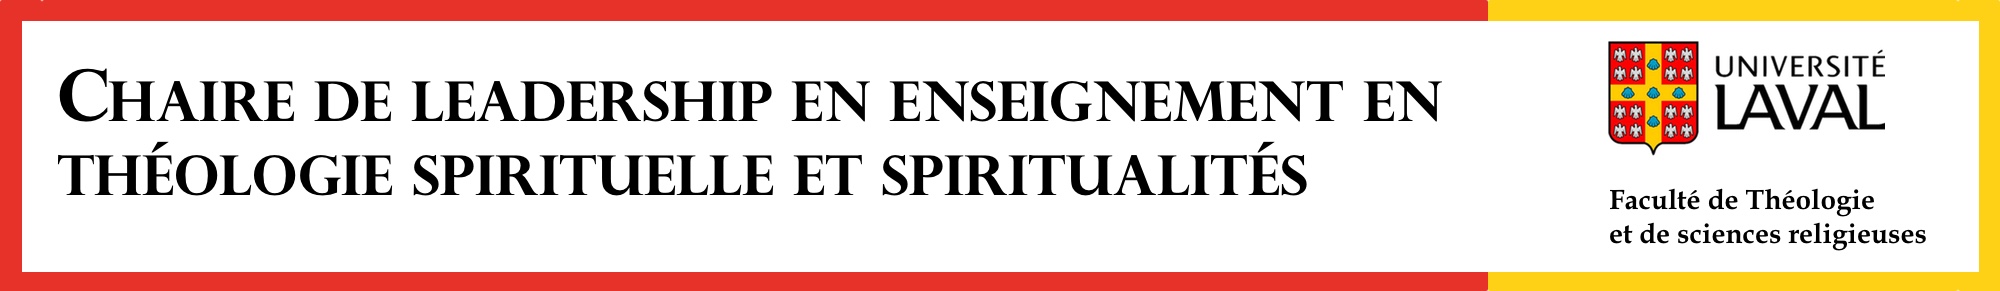 Chaire de leadership en enseignement en théologie spirituelle et spiritualités